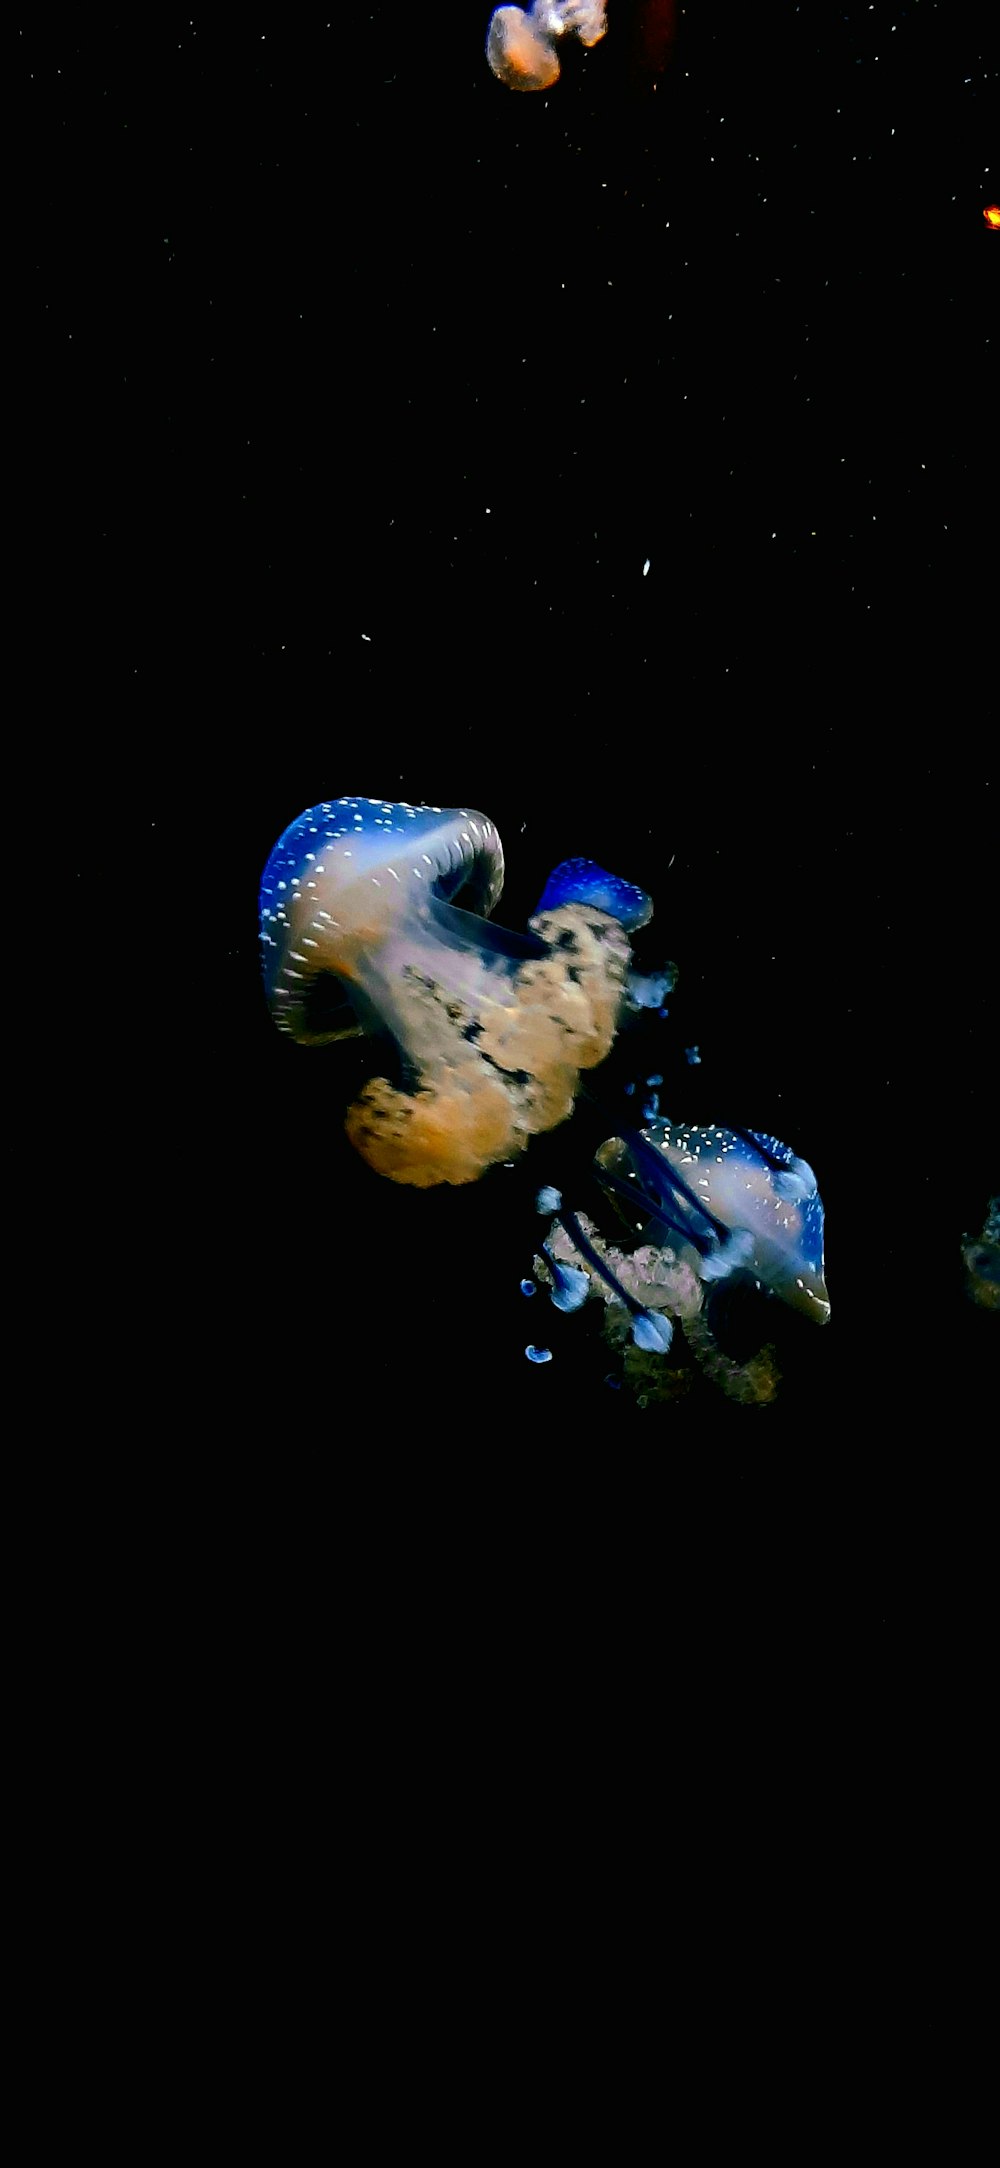 un gruppo di meduse che galleggiano nell'oceano di notte